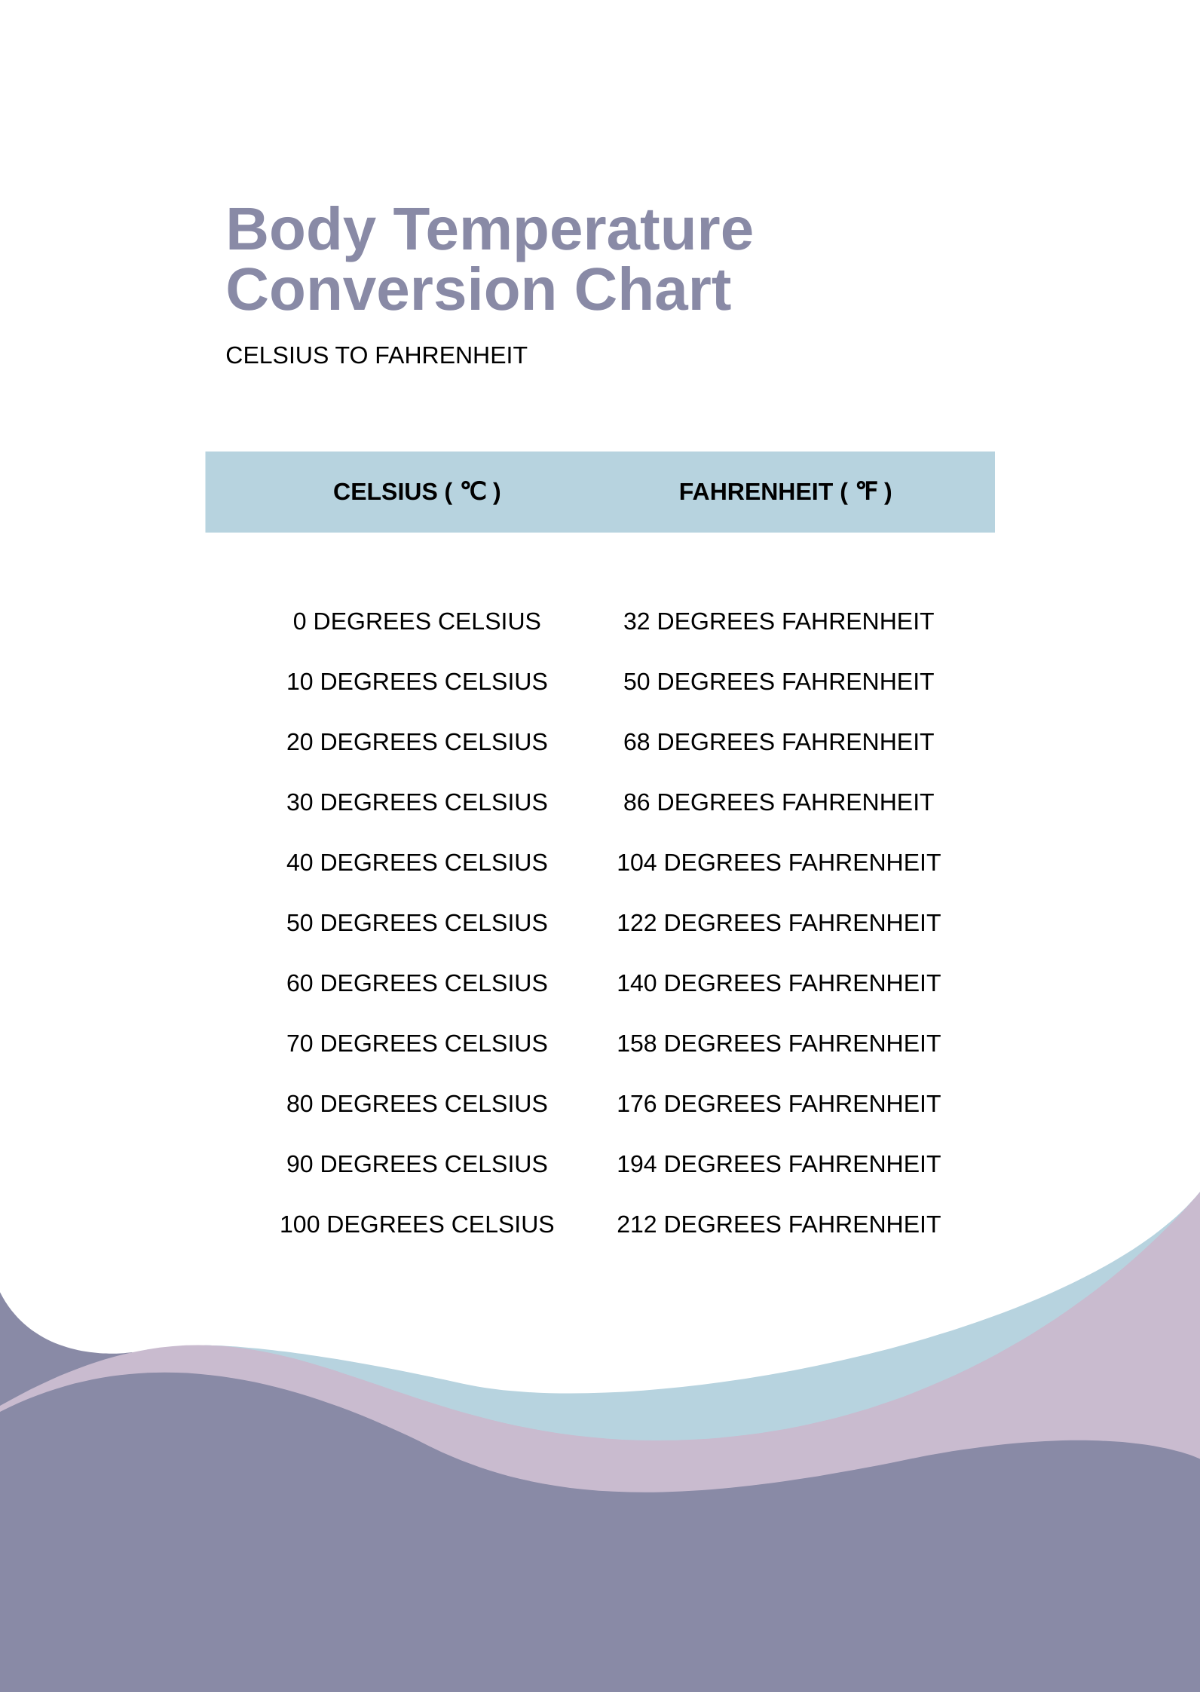 Body Temperature Conversion Chart Template